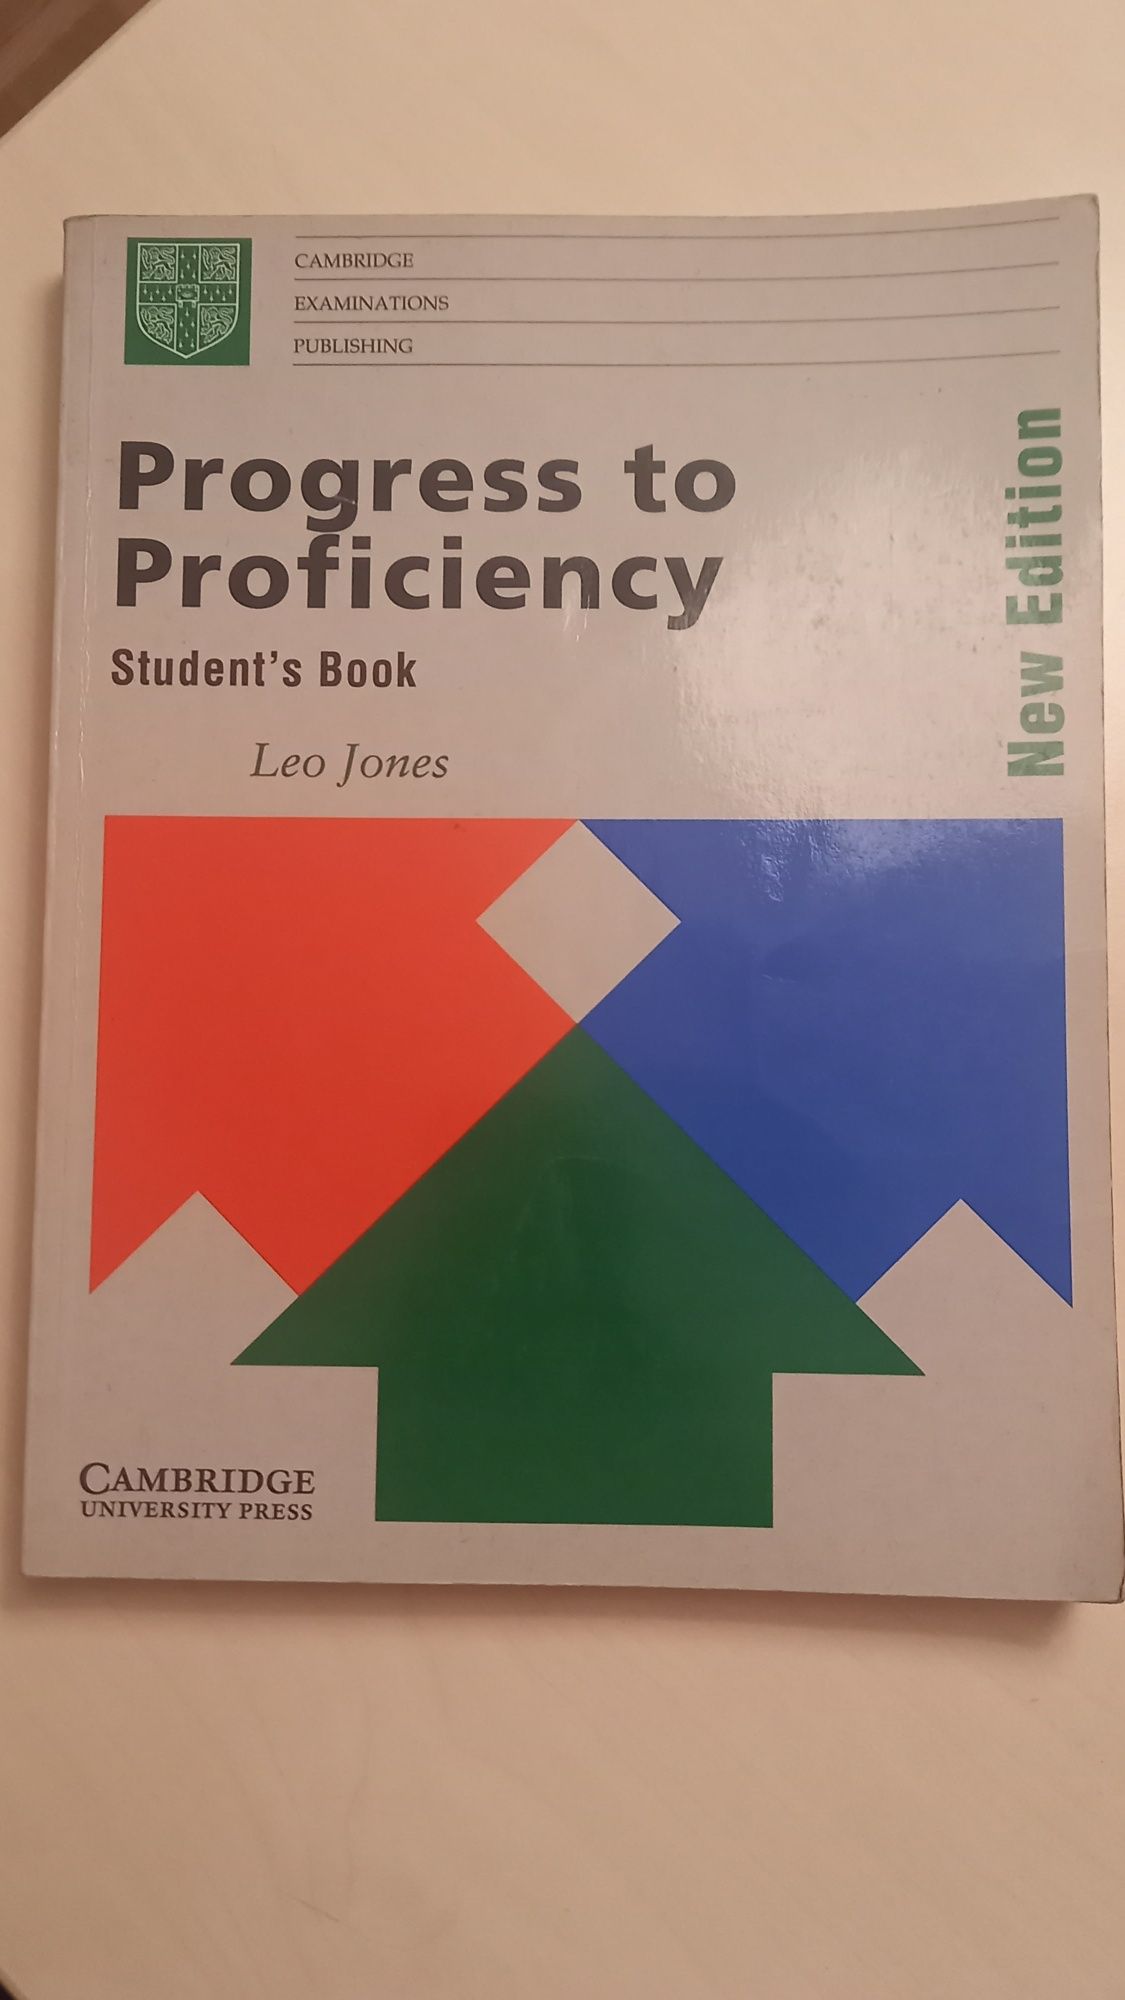 Progress to Proficiency. Leo Jones  Cambridge  University Press.